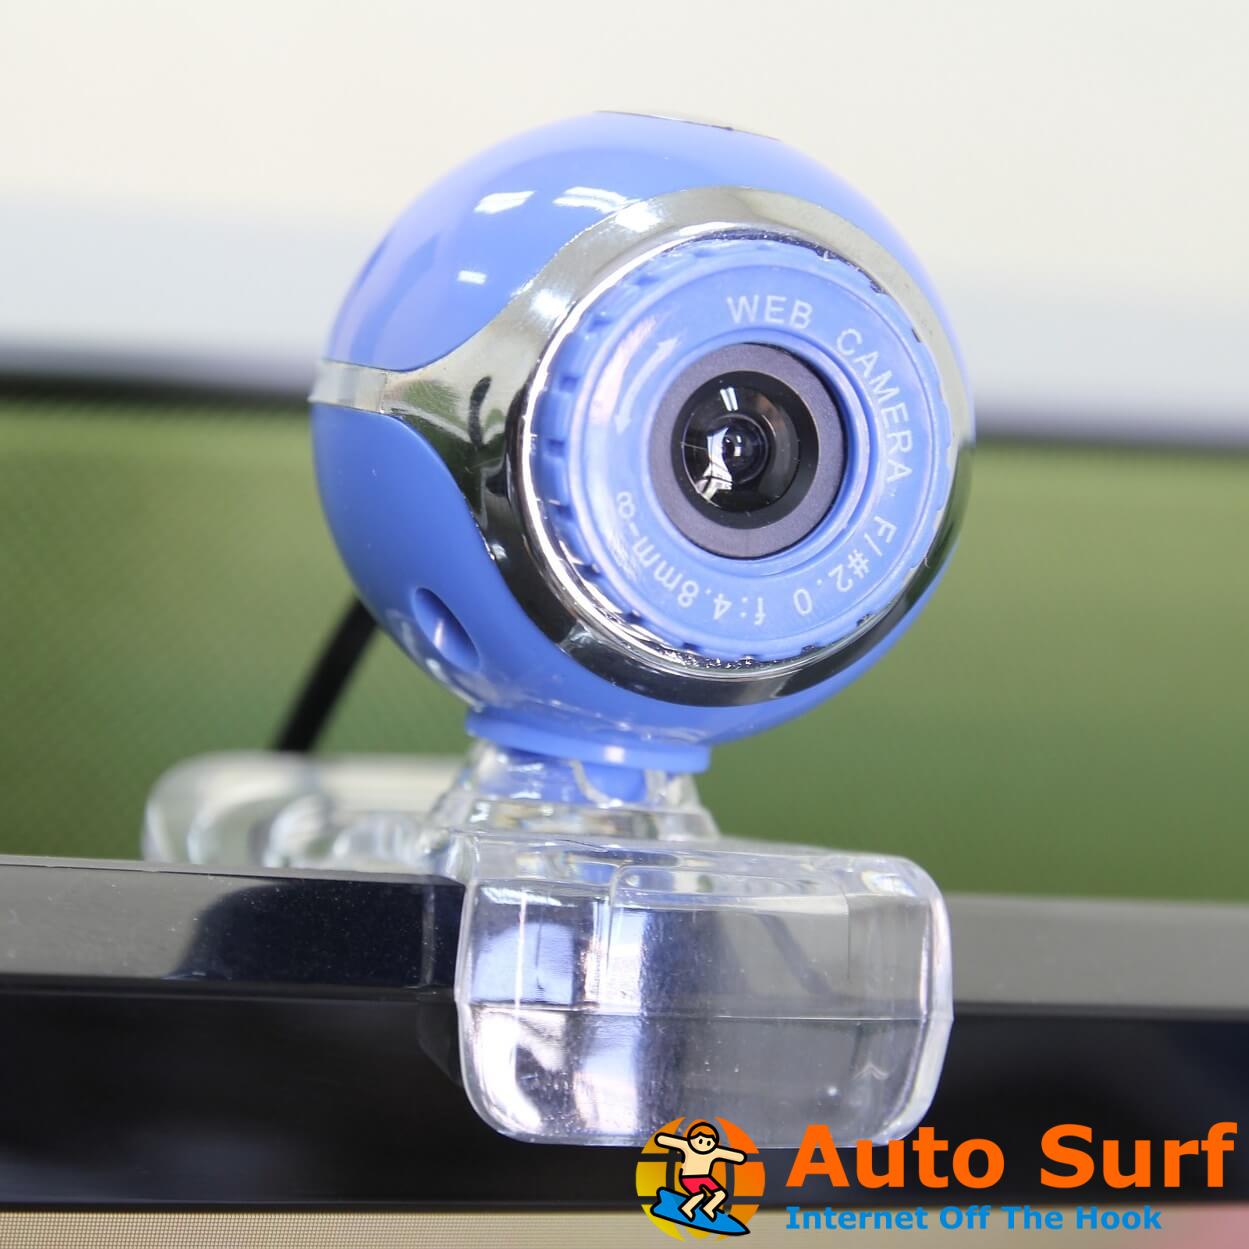 mejor software de vigilancia con cámara web